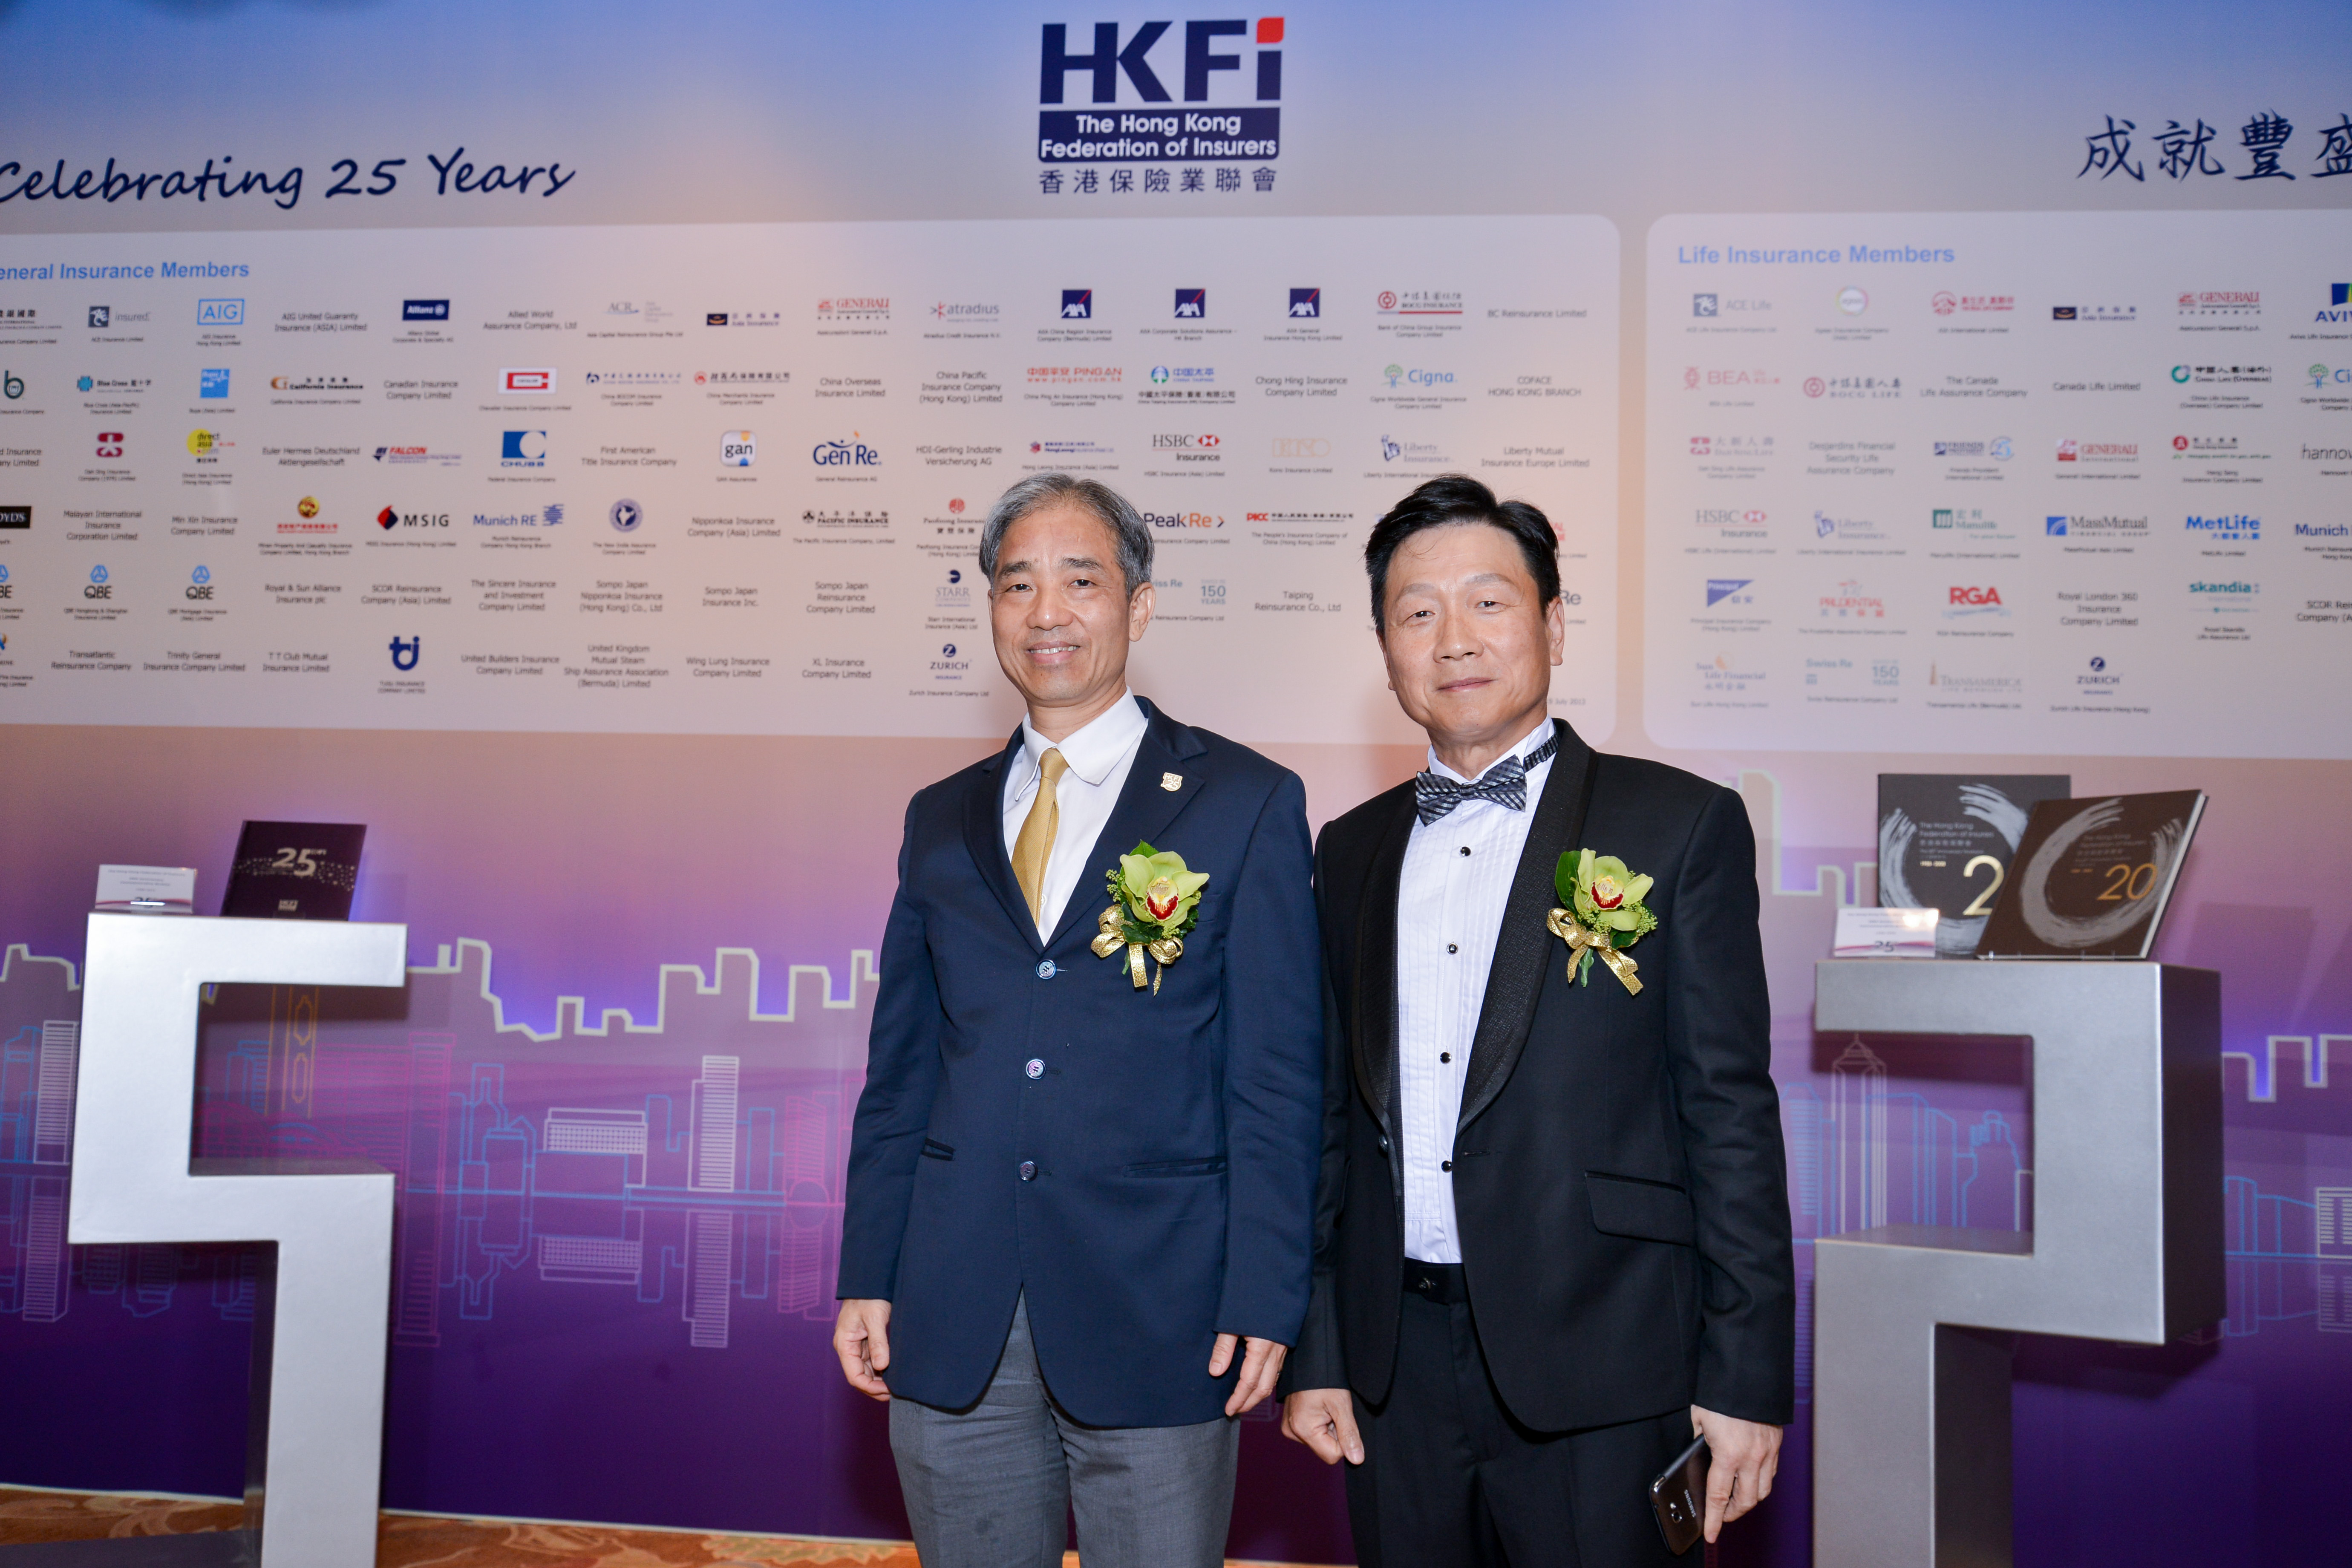 HKFI Celebrating 25 Years - Cocktail (2)